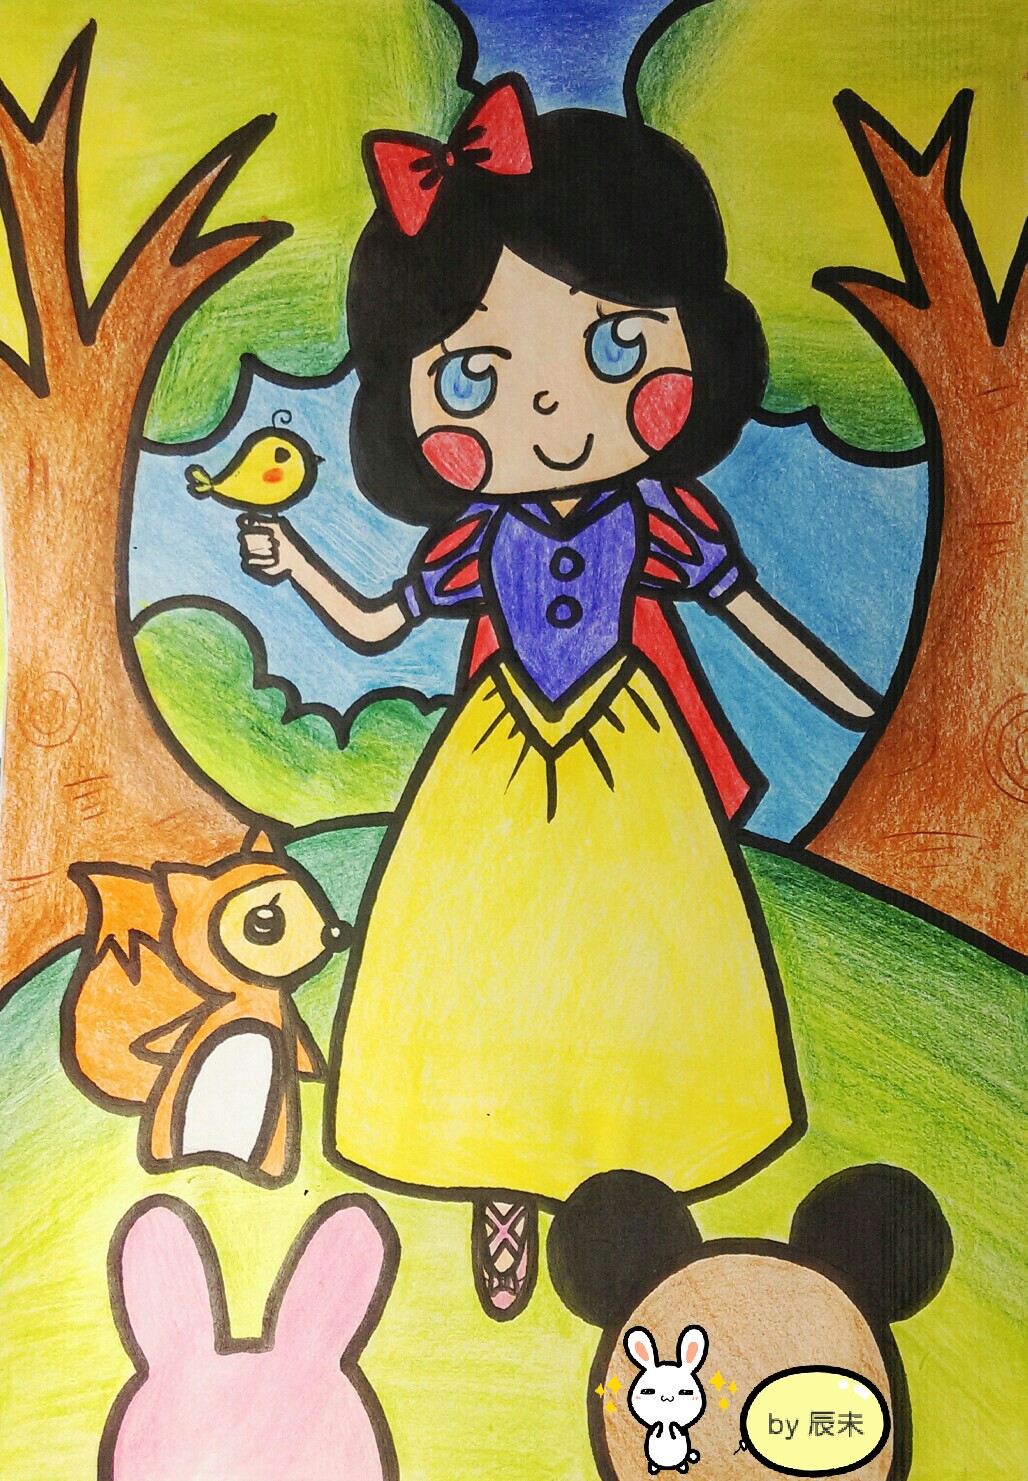 暑假作业#儿童画之迪士尼公主系列--白雪公主( " " )哈哈少女心,突然